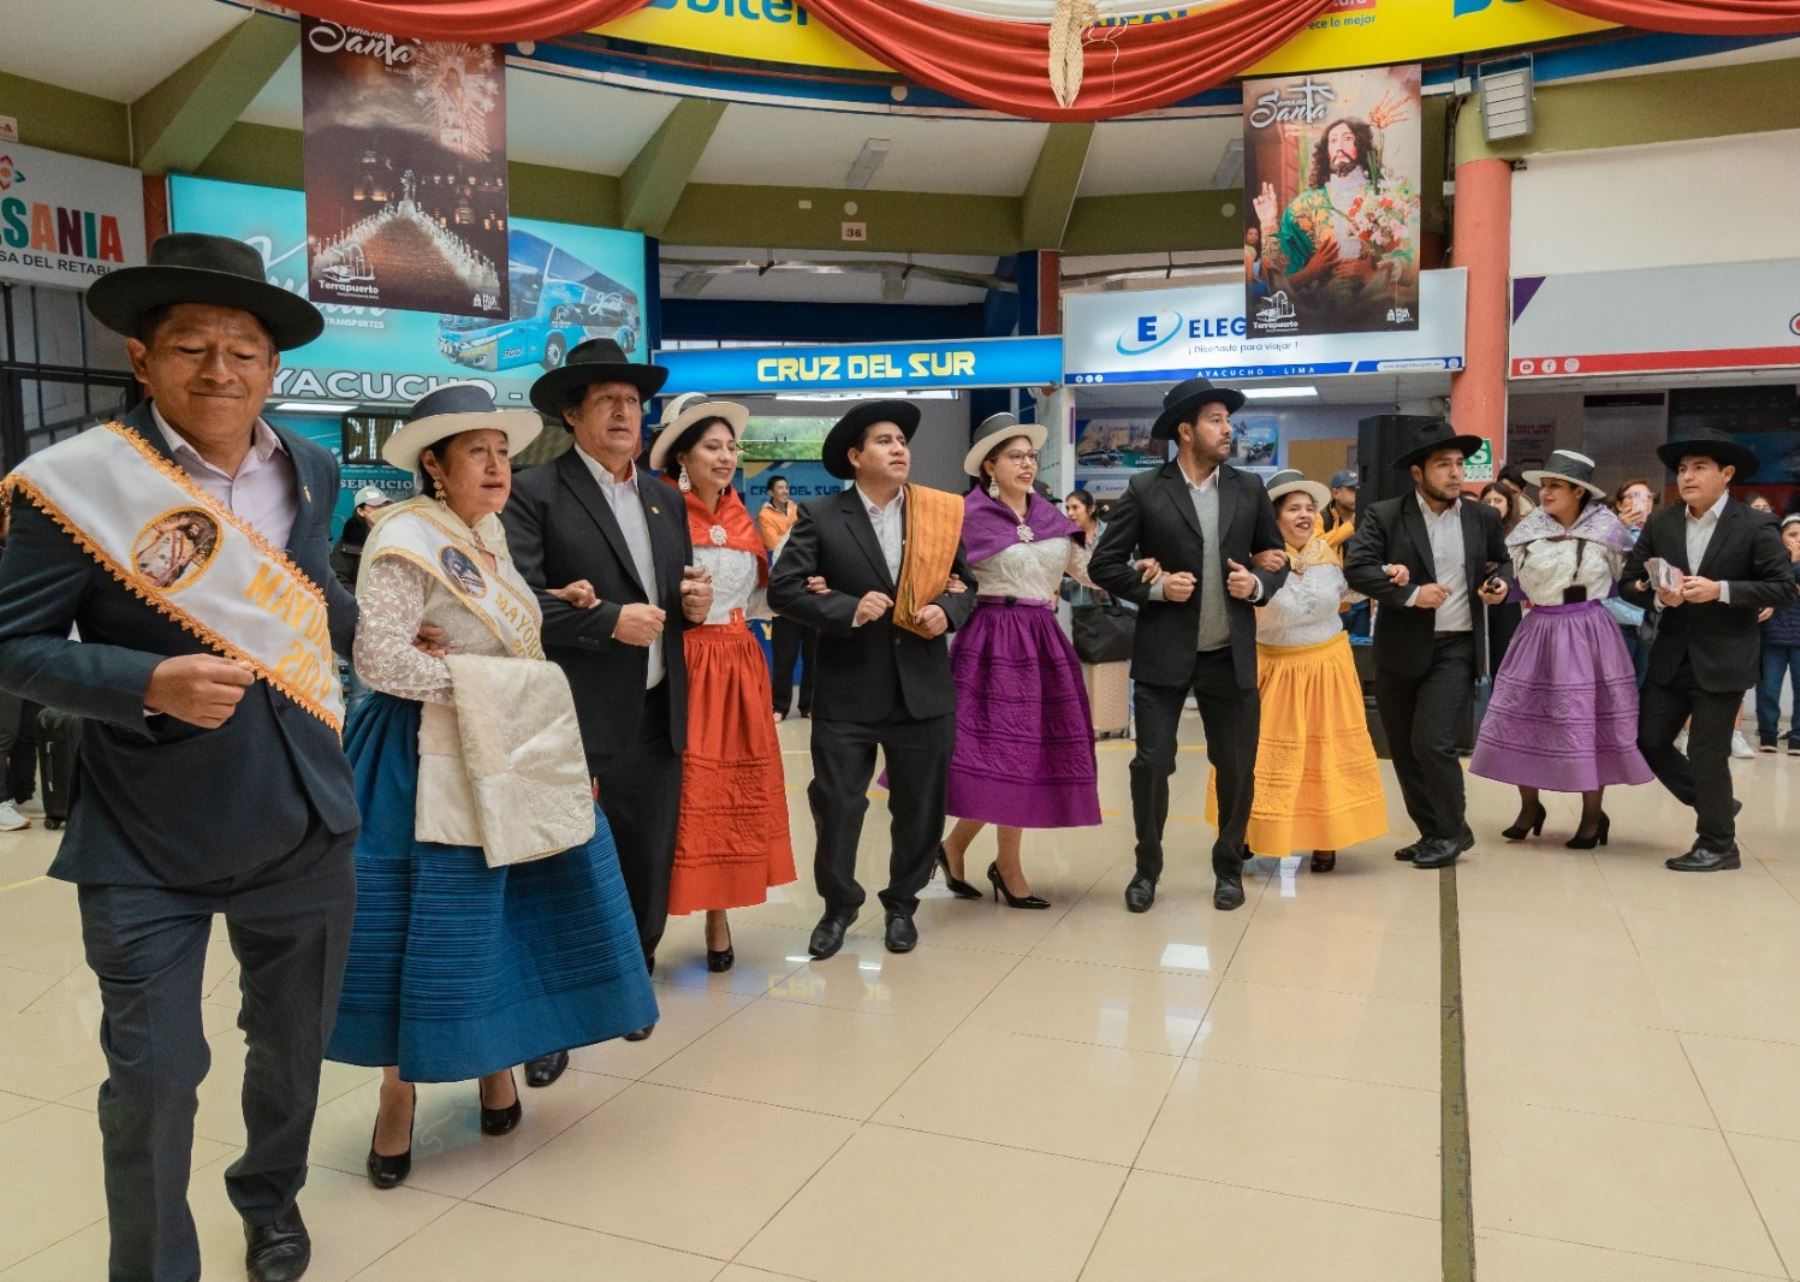 Con música y en un ambiente festivo, las autoridades de Ayacucho dieron la bievenida a las decenas de turistas que arribaron esta mañana a esta ciudad para participar de las actividades por Semana Santa. ANDINA/Difusión